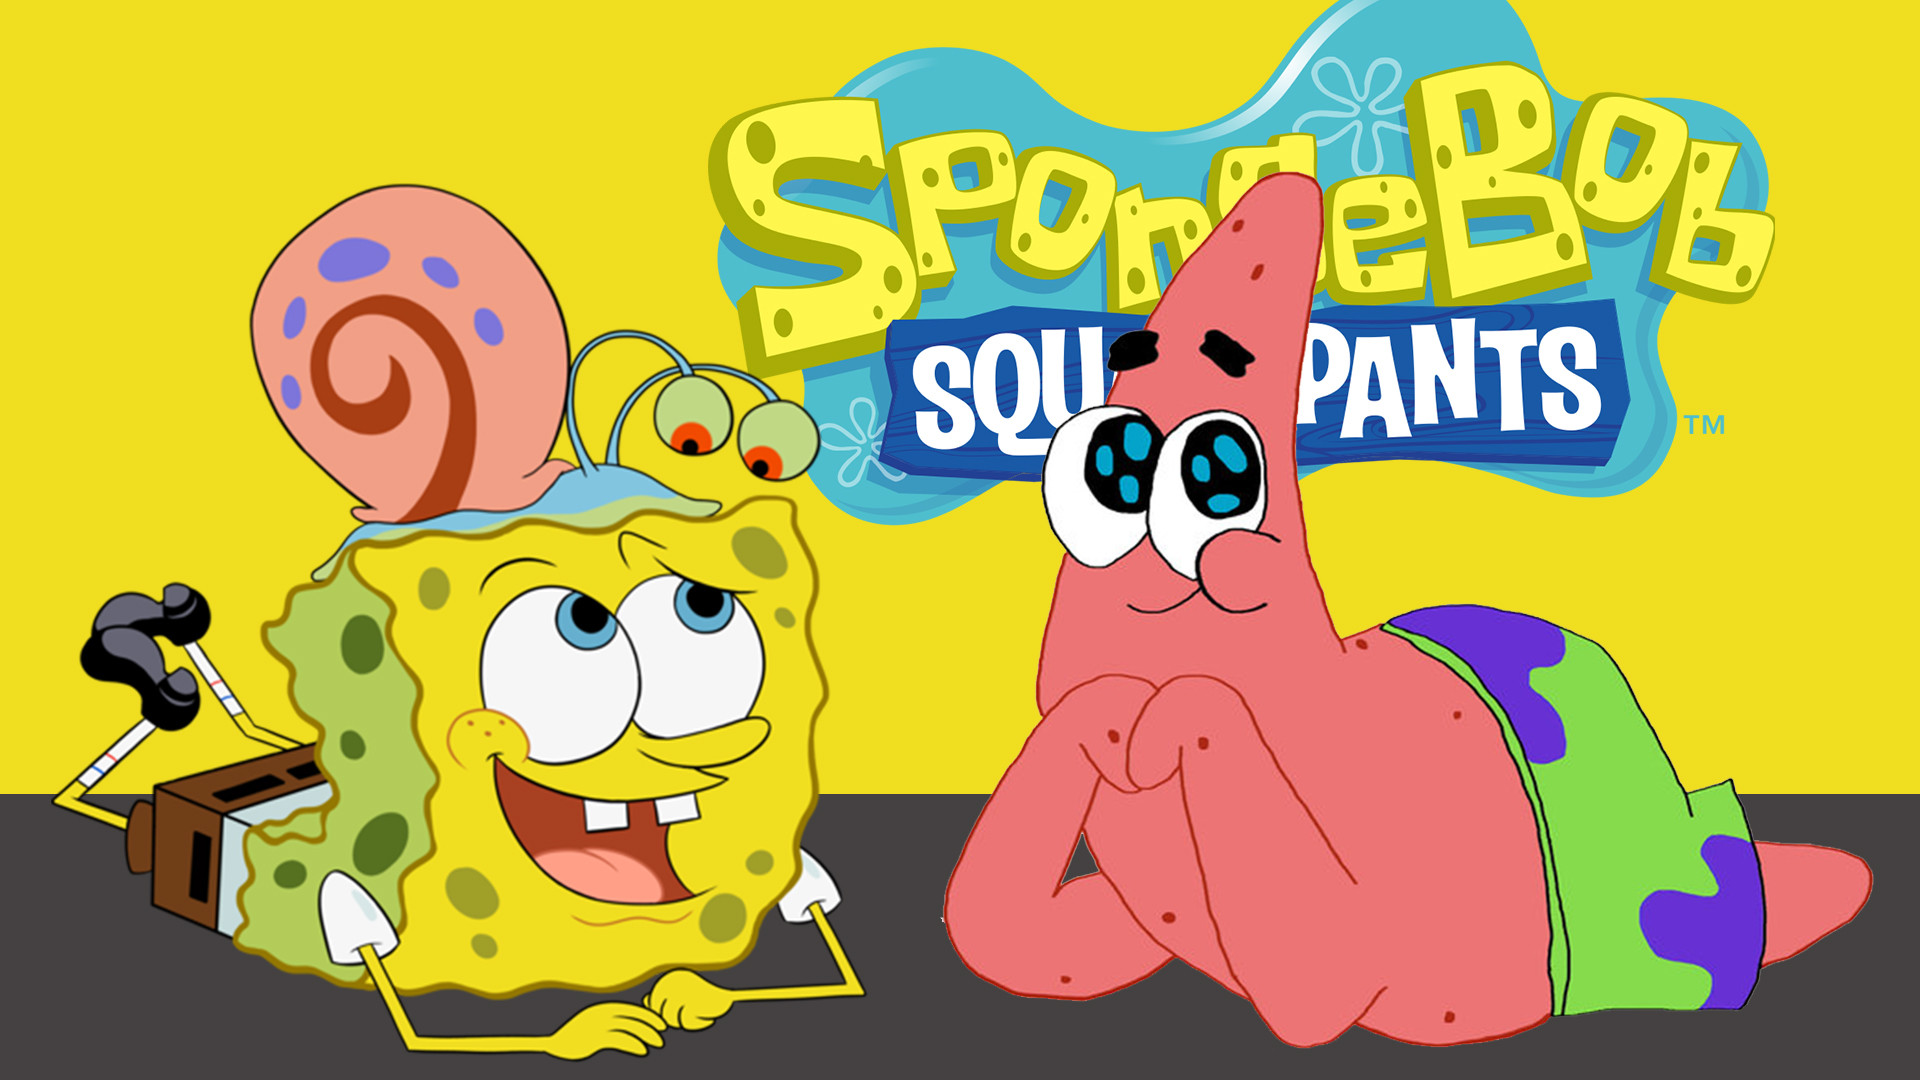 sfondo del desktop spongebob,cartone animato,cartone animato,giallo,testo,illustrazione